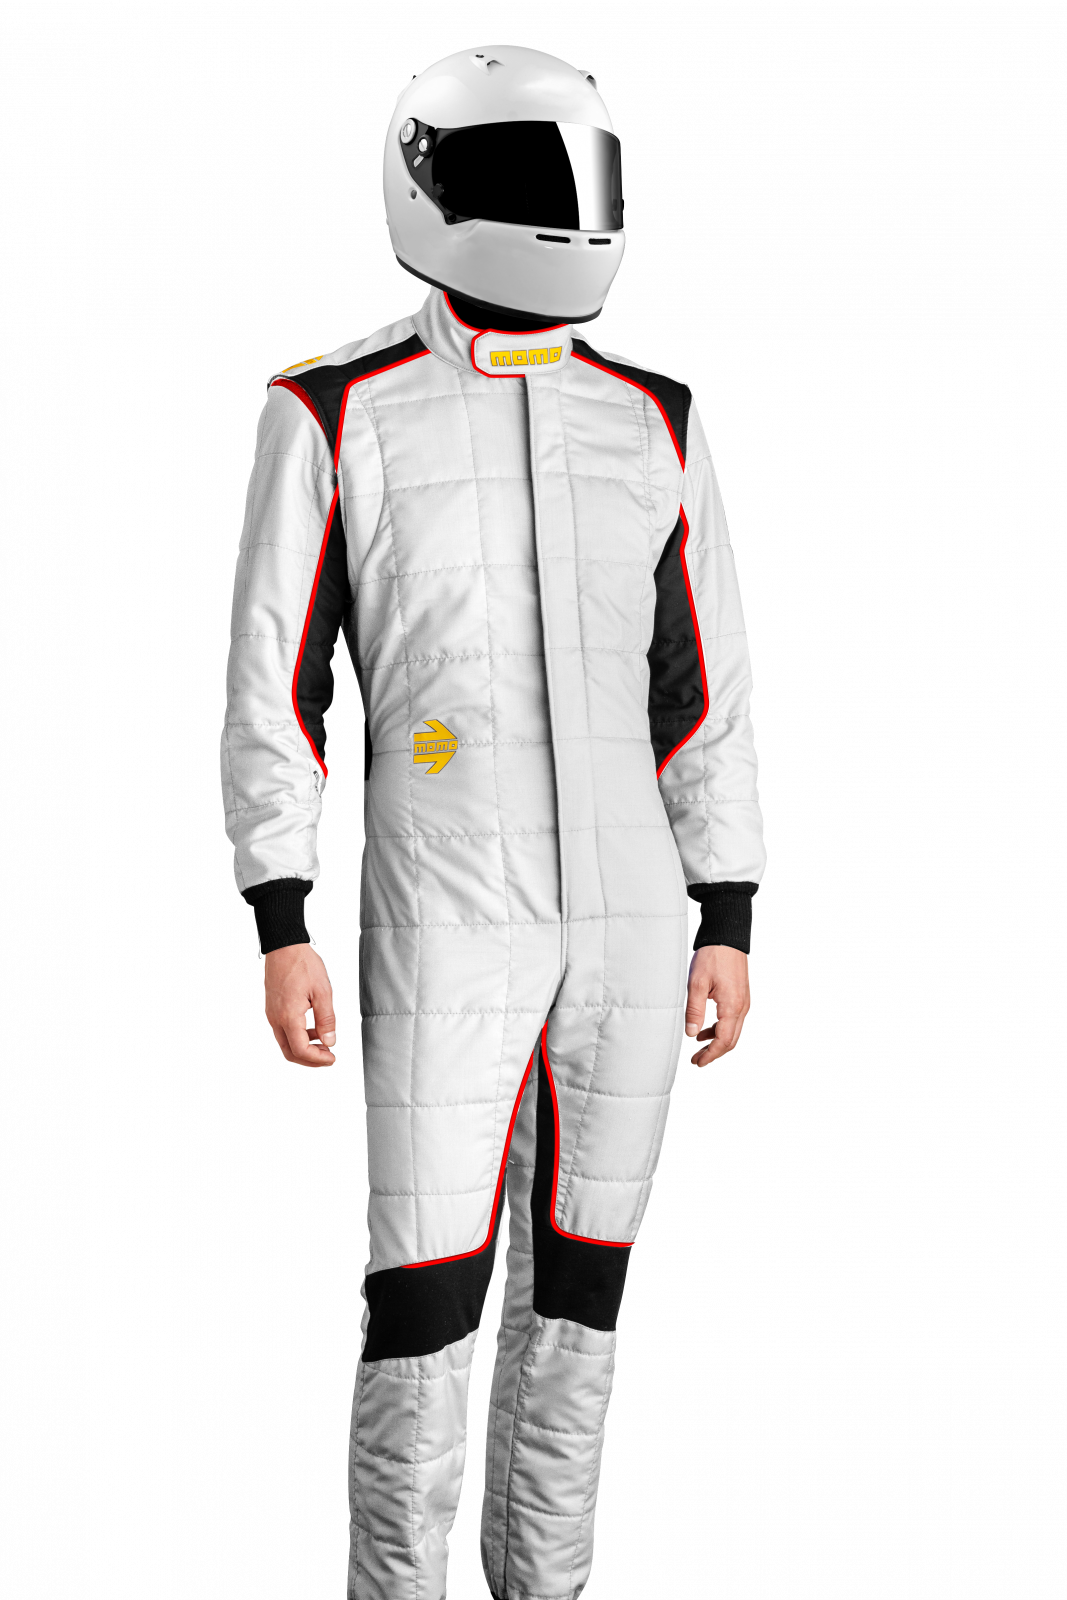 MOMO Corsa Evo White Size 48 Racing Suit TUCOEVOWHT48